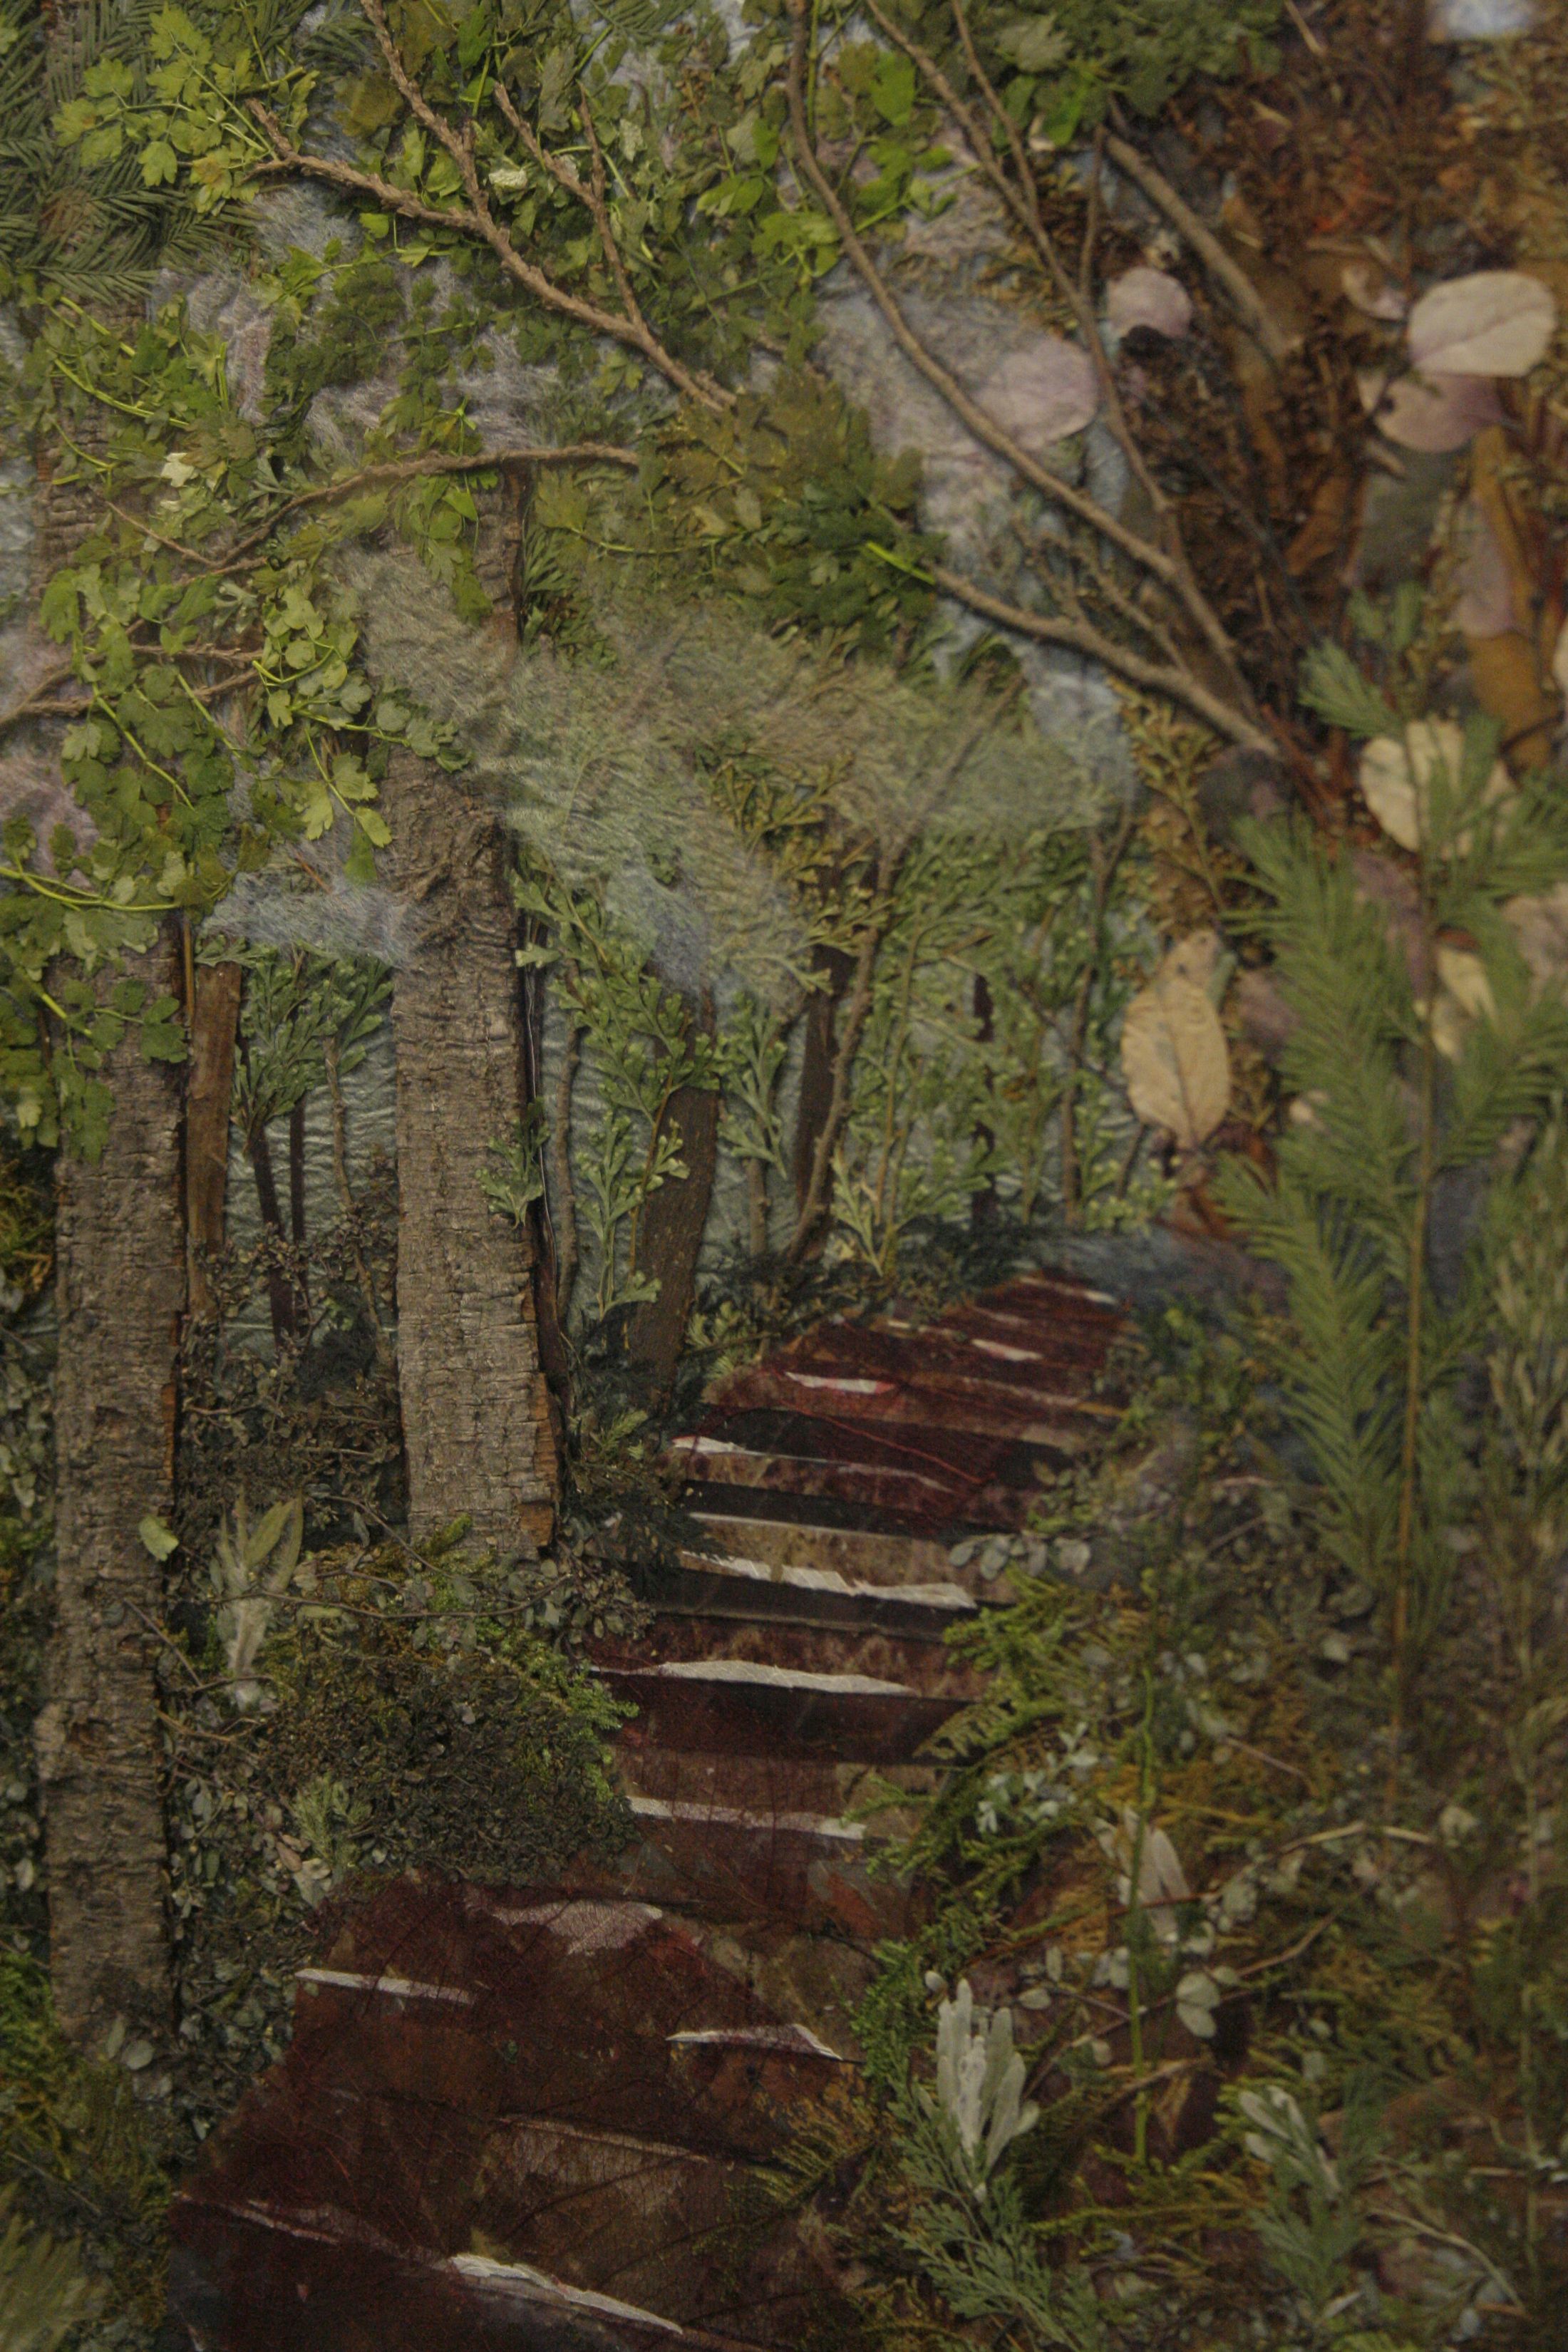 邓丽华的作品「阿里山古道」以枯枝落叶淋漓尽致表现出古道的层次。